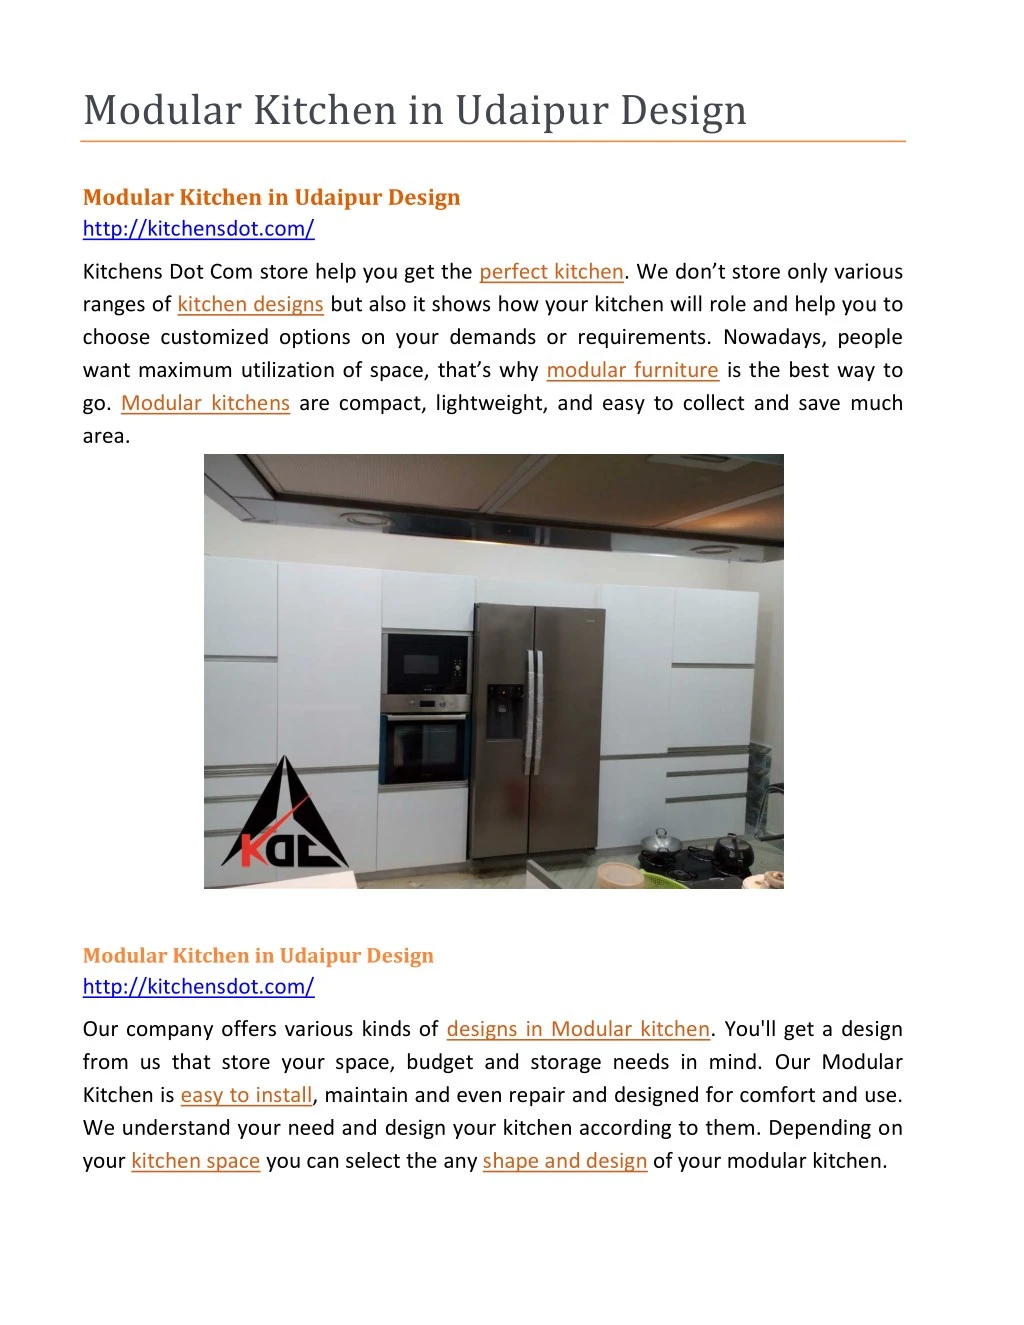 PPT - Modular Kitchen in Udaipur Design PowerPoint Presentation, free ...